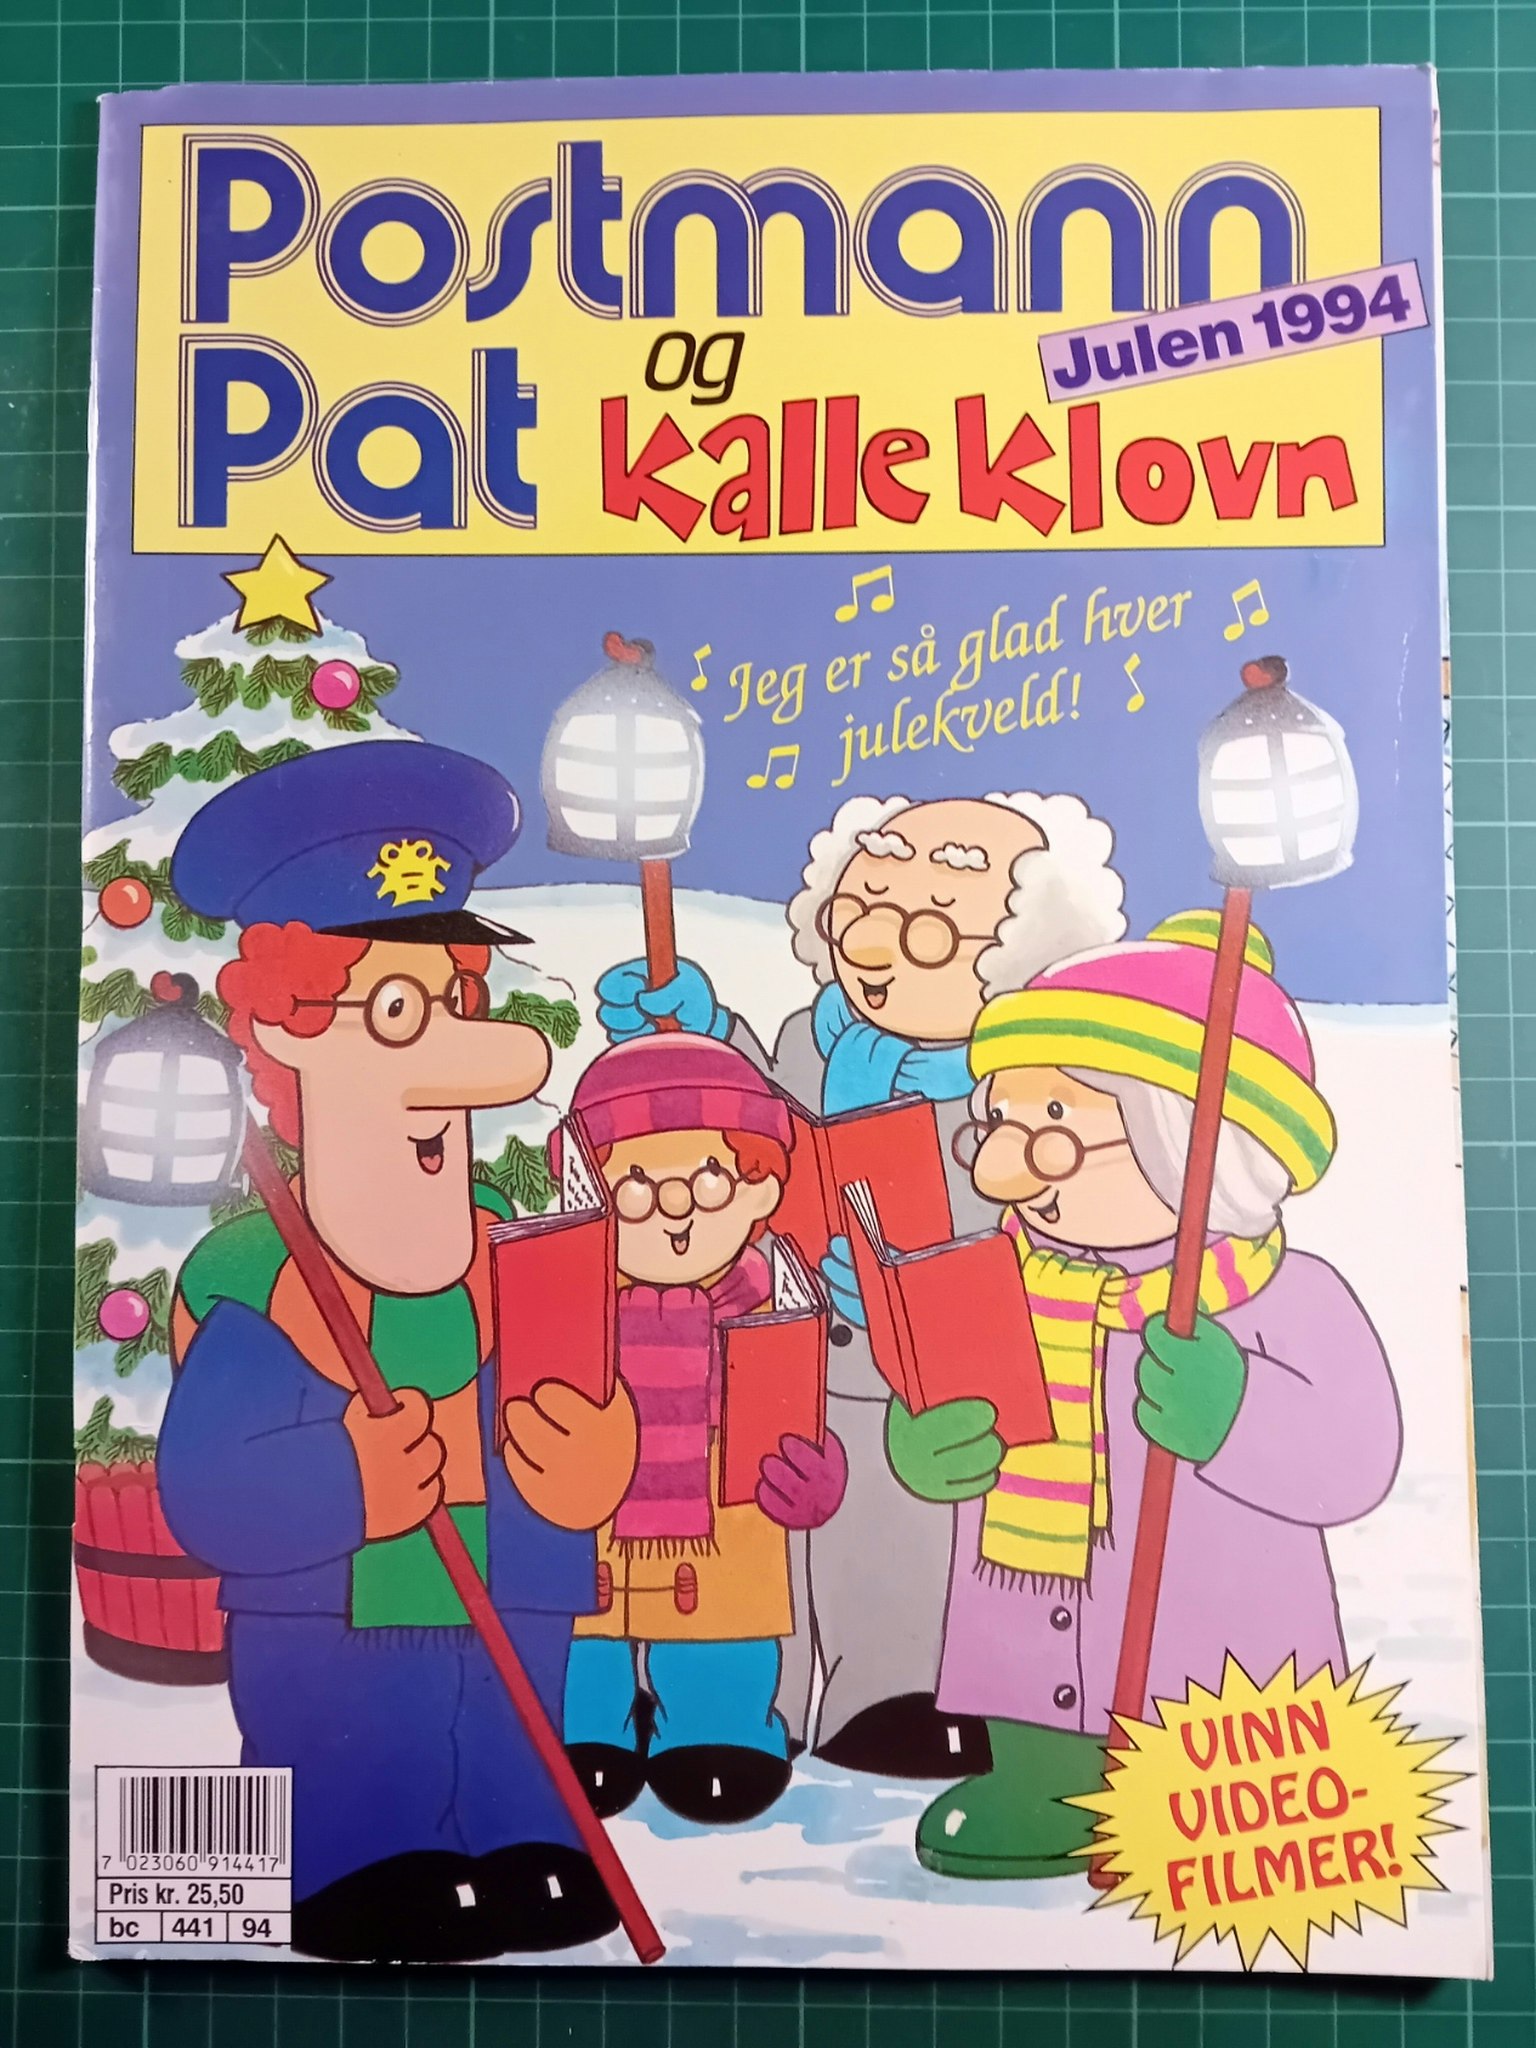 Postmann Pat Julen 1994